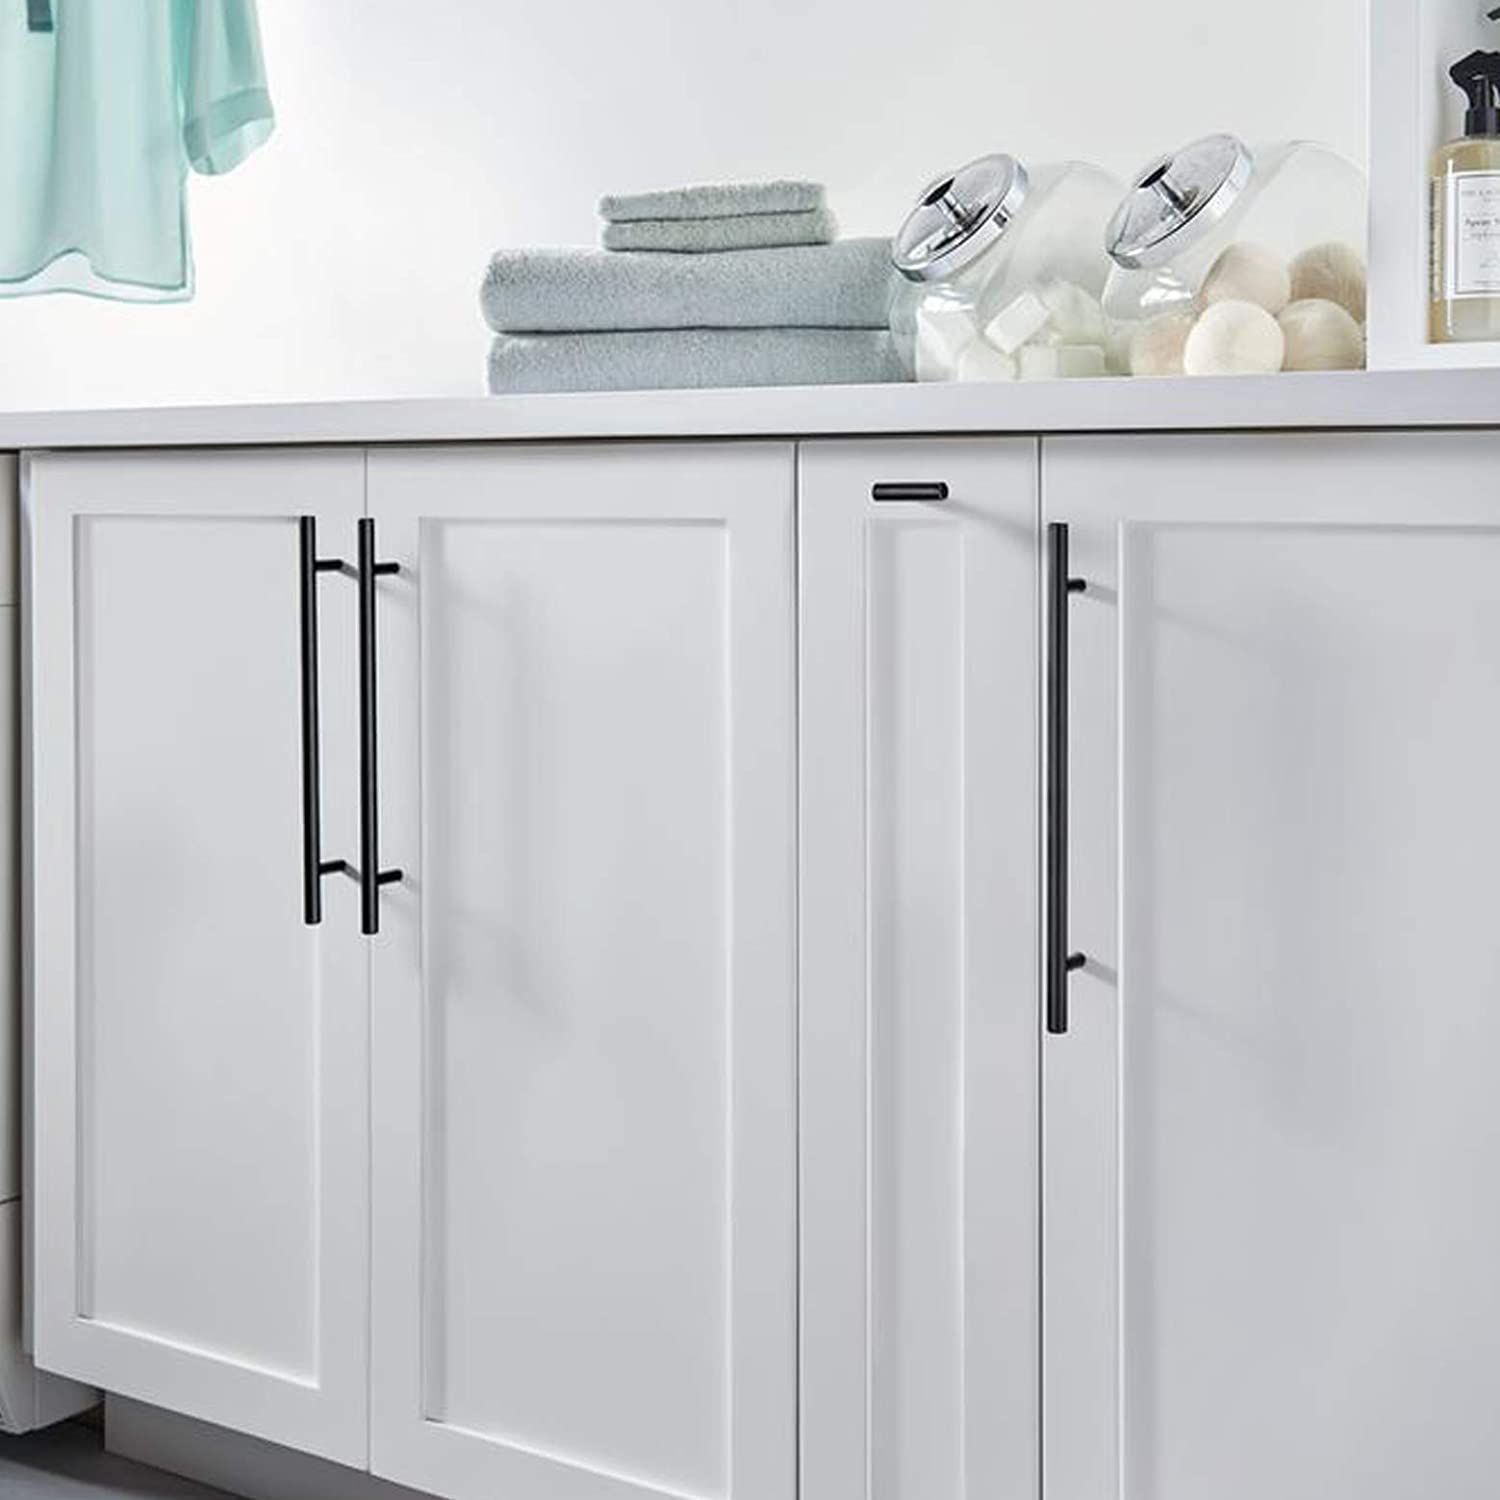 (10) Matte Black 11.35" Stainless Steel Kitchen Drawer Pulls Cupboard Handles Cabinet Handles